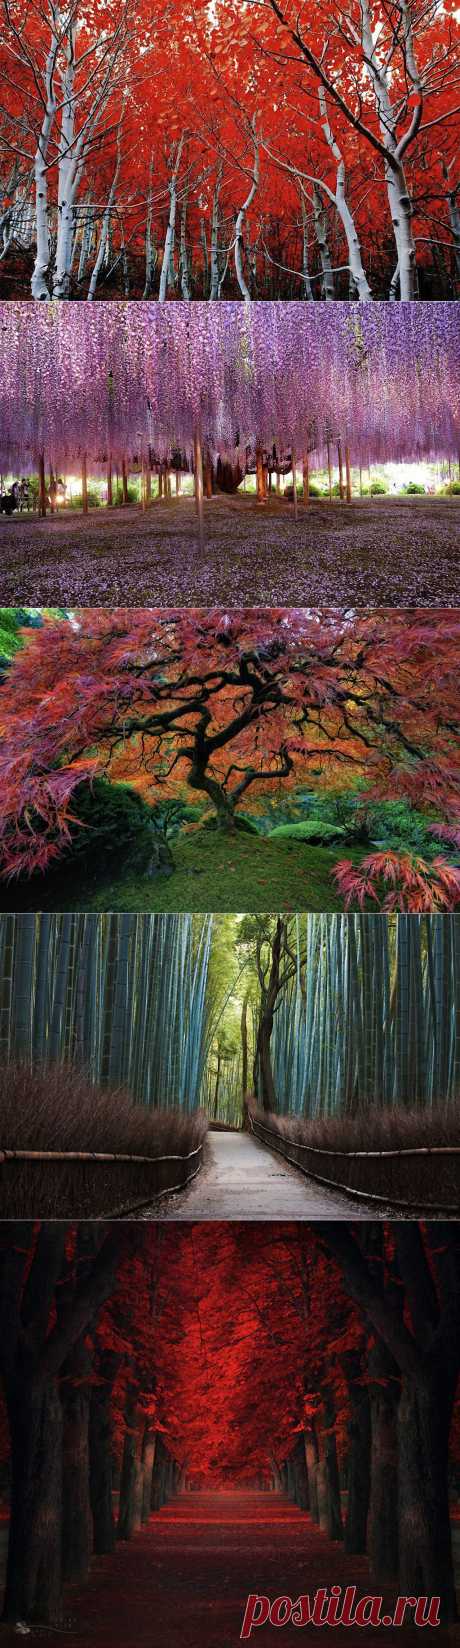 Самые красивые деревья в мире | РОЗЫ